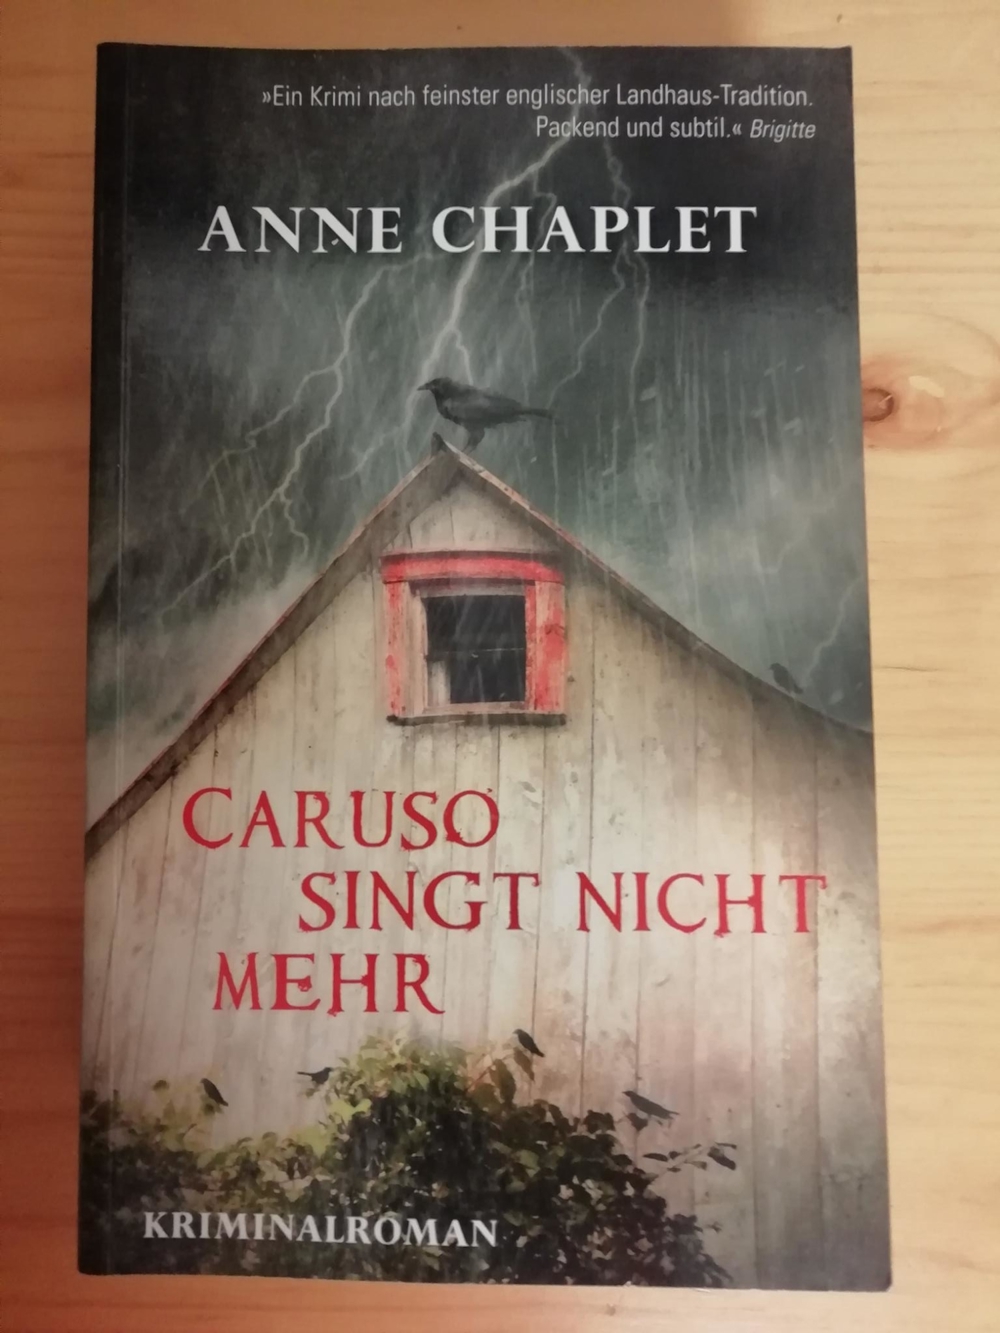 Caruso singt nicht mehr - Anne Chaplet - Krimi - Softcover